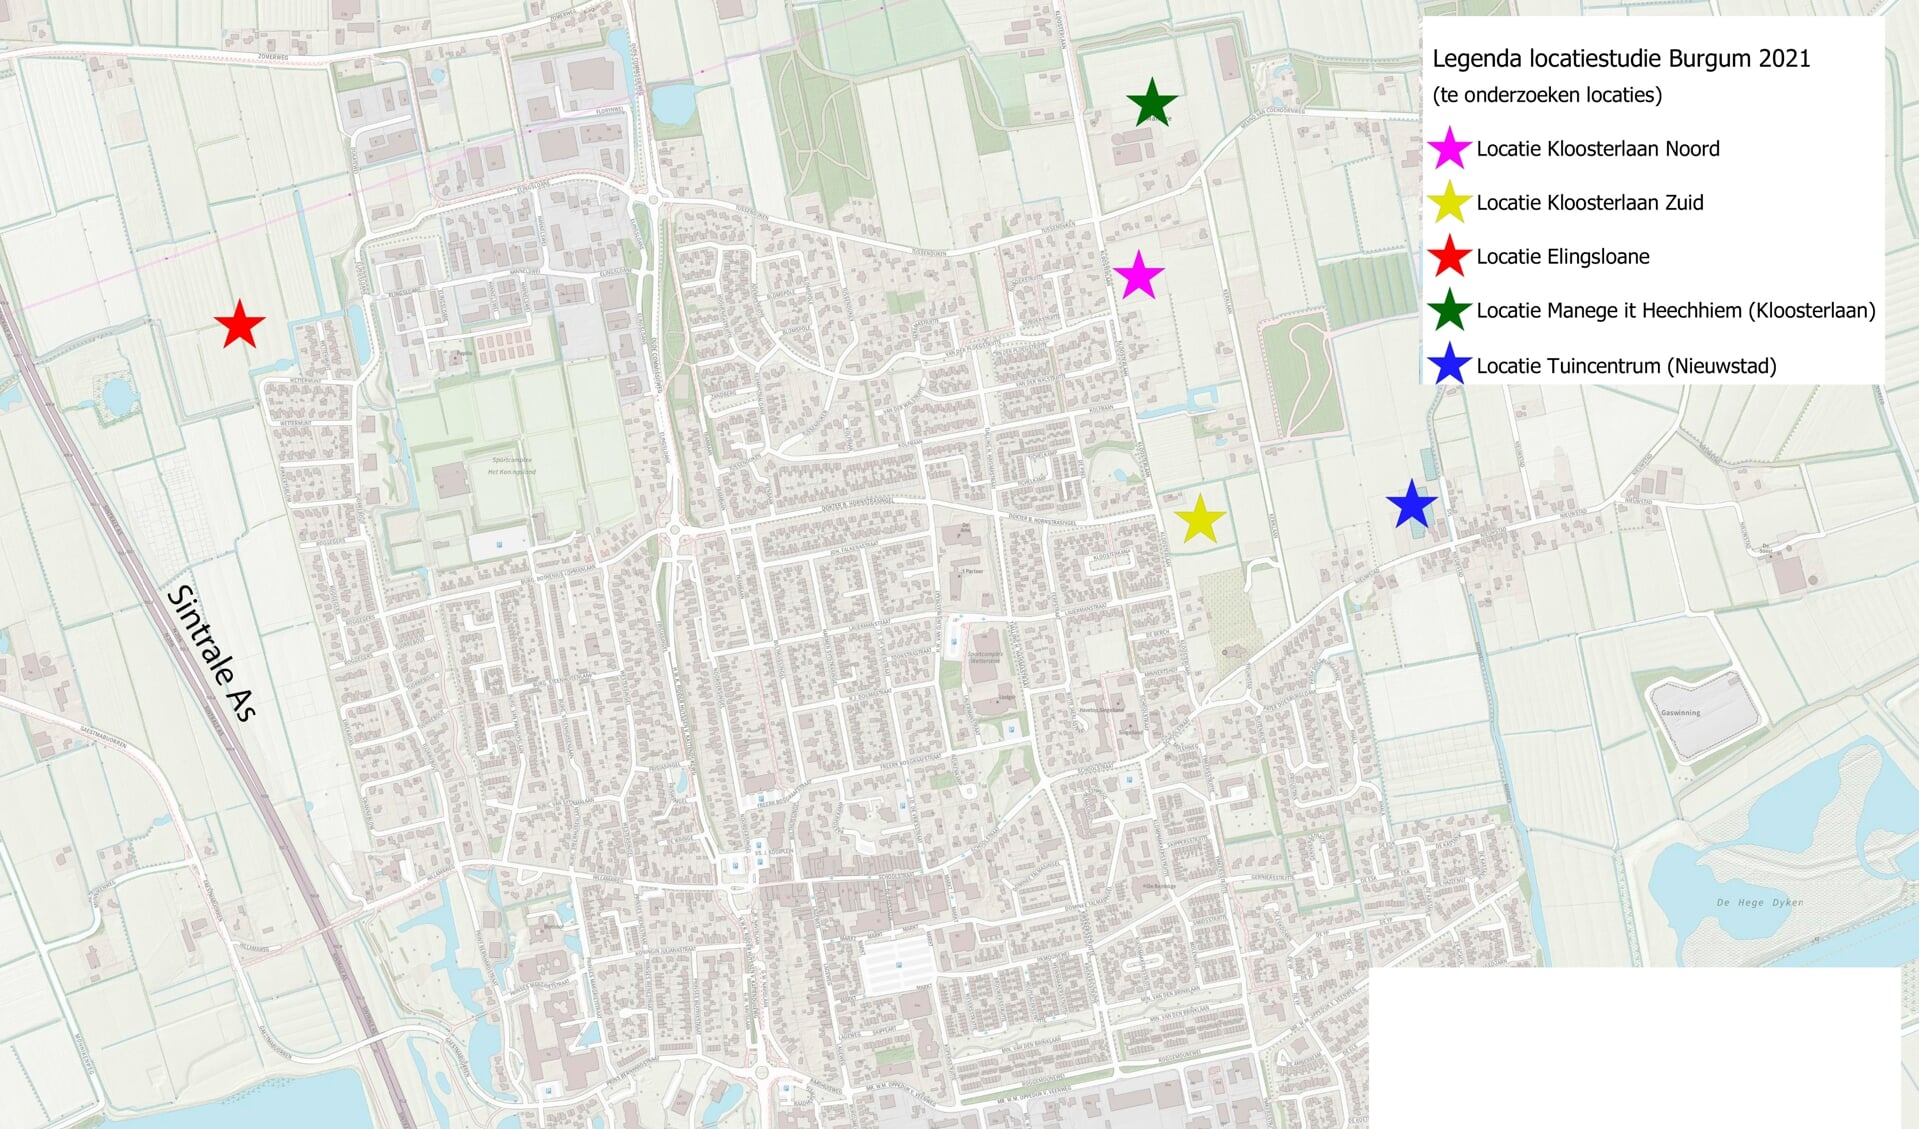 De groene ster ('manege') en de lila ster ('Kloosterlaan Noord') hebben de voorkeur van de gemeenteraad van Tytsjerksteradiel voor nieuwbouw.